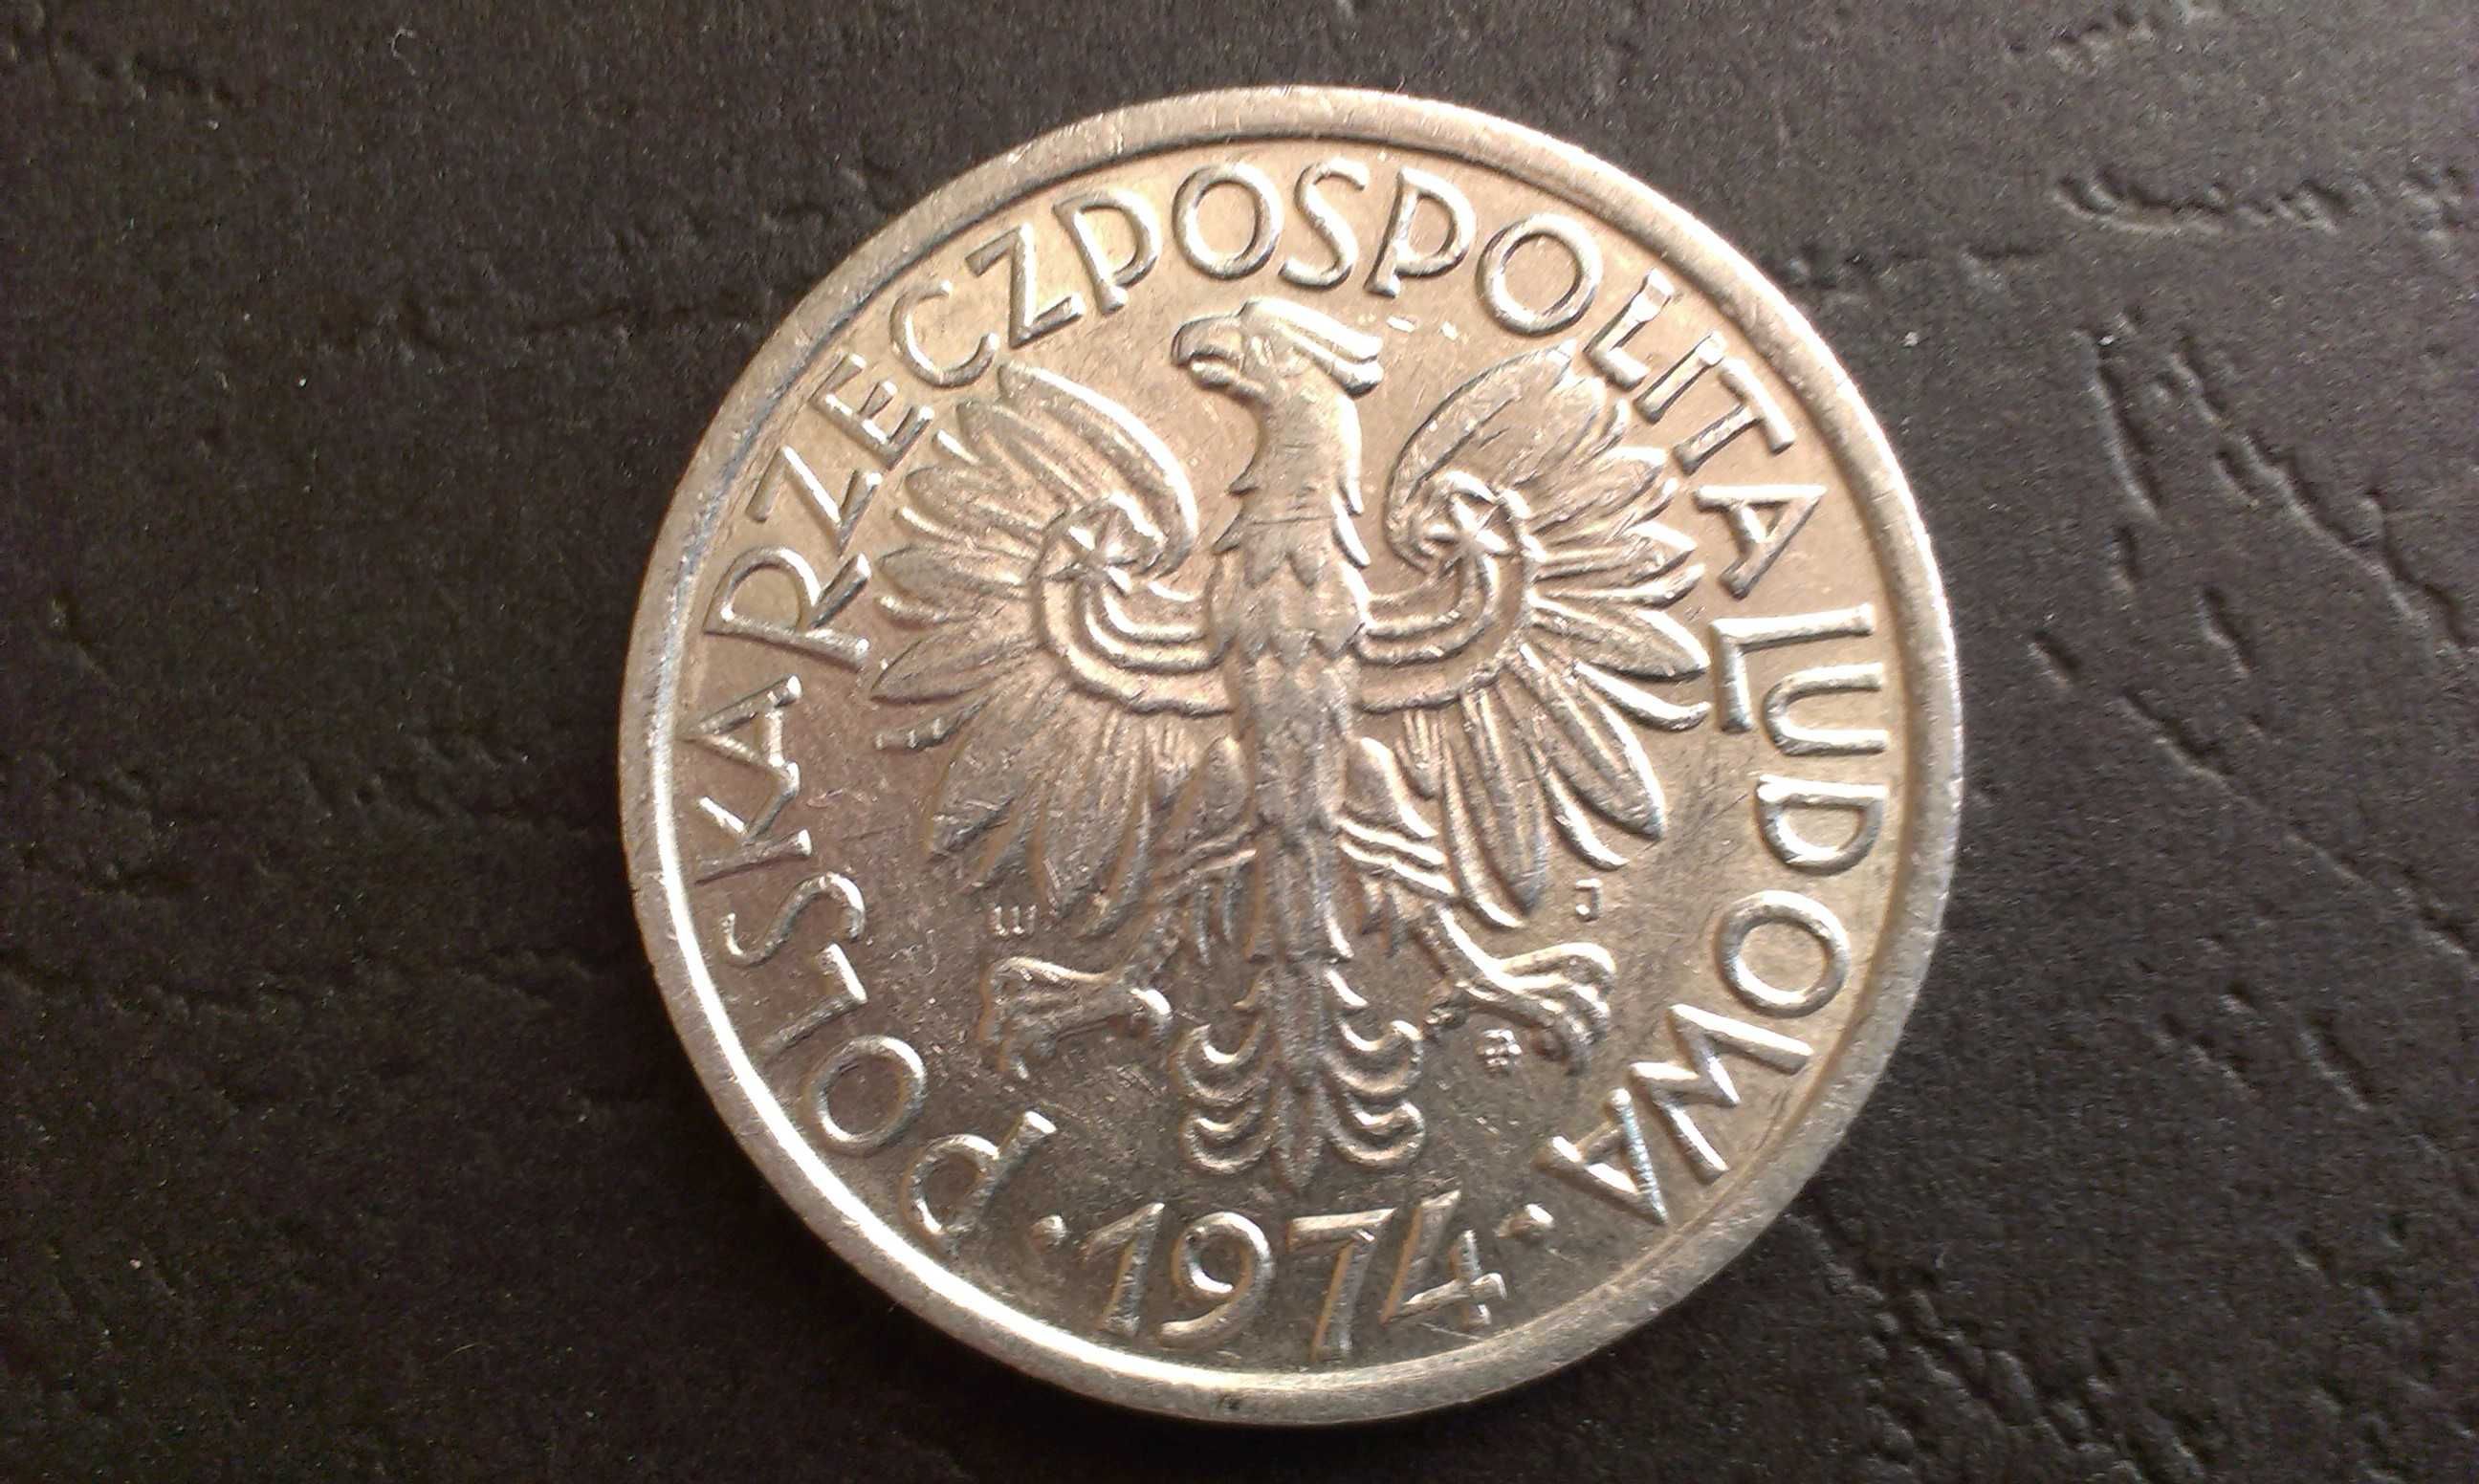 Moneta 2 złote 1974 rok Jagody PRL.